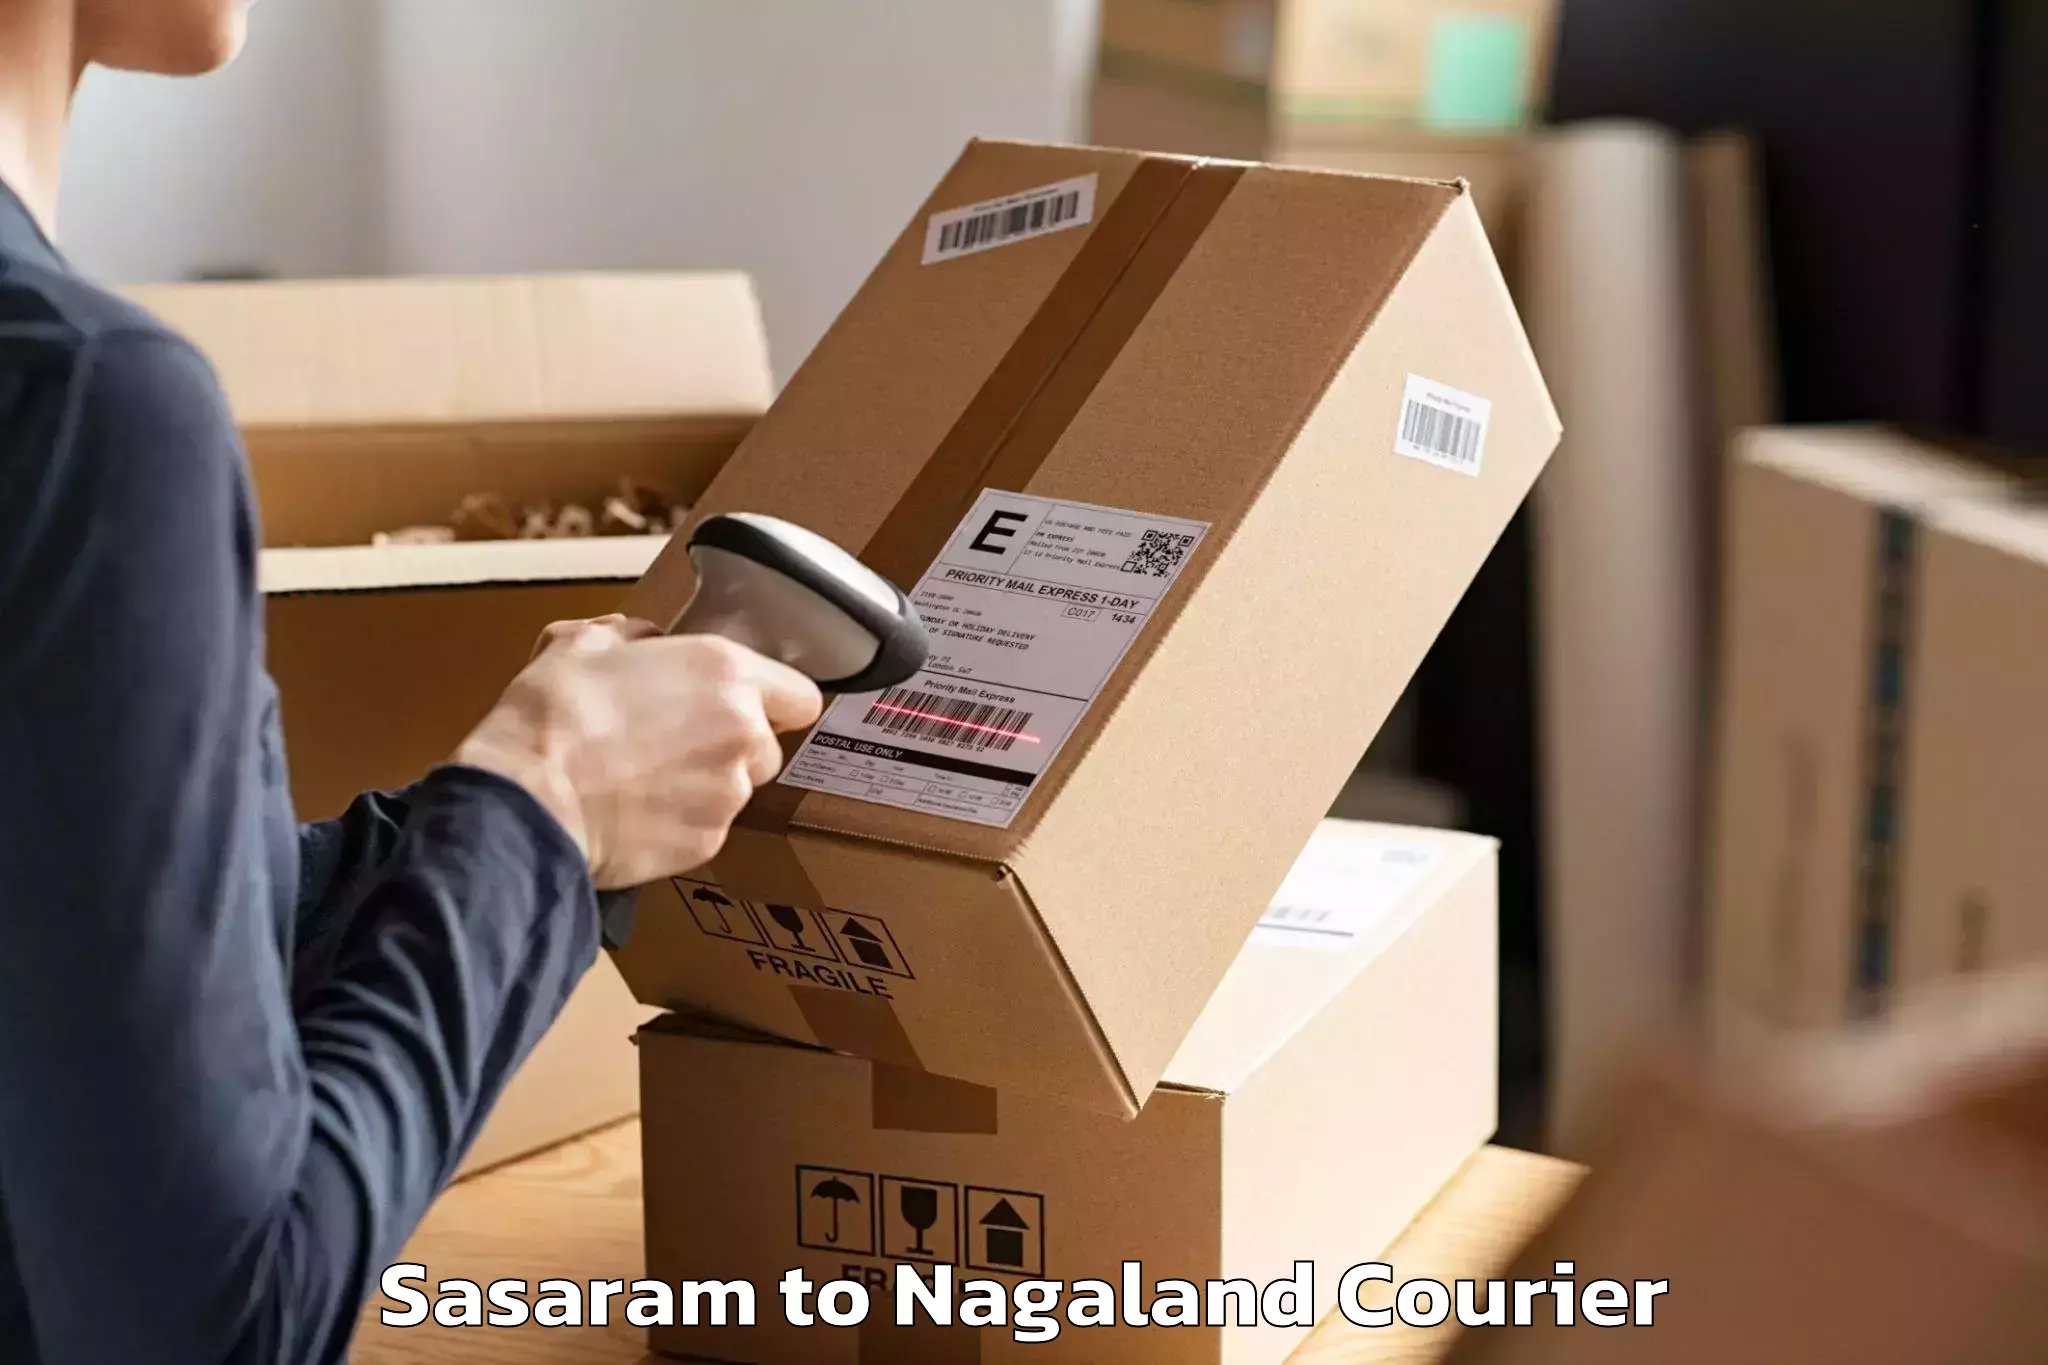 Professional movers Sasaram to Nagaland